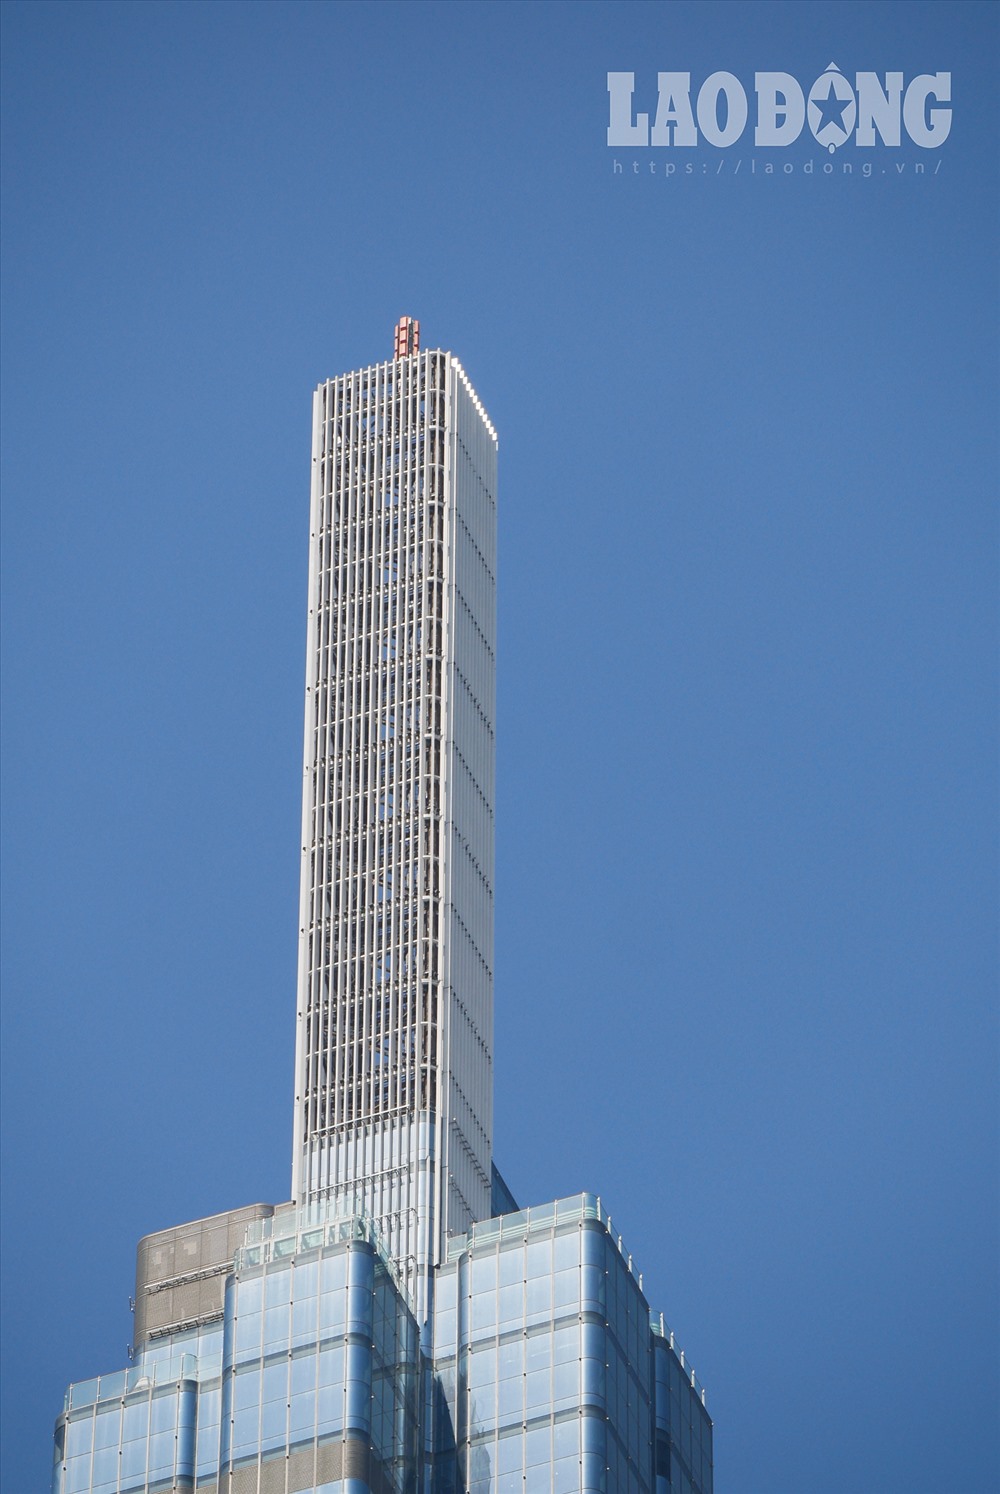 Trên tòa tháp Landmark bắt đầu bắn từ tầng 81 đến tầng 6 phần tháp phía trên.